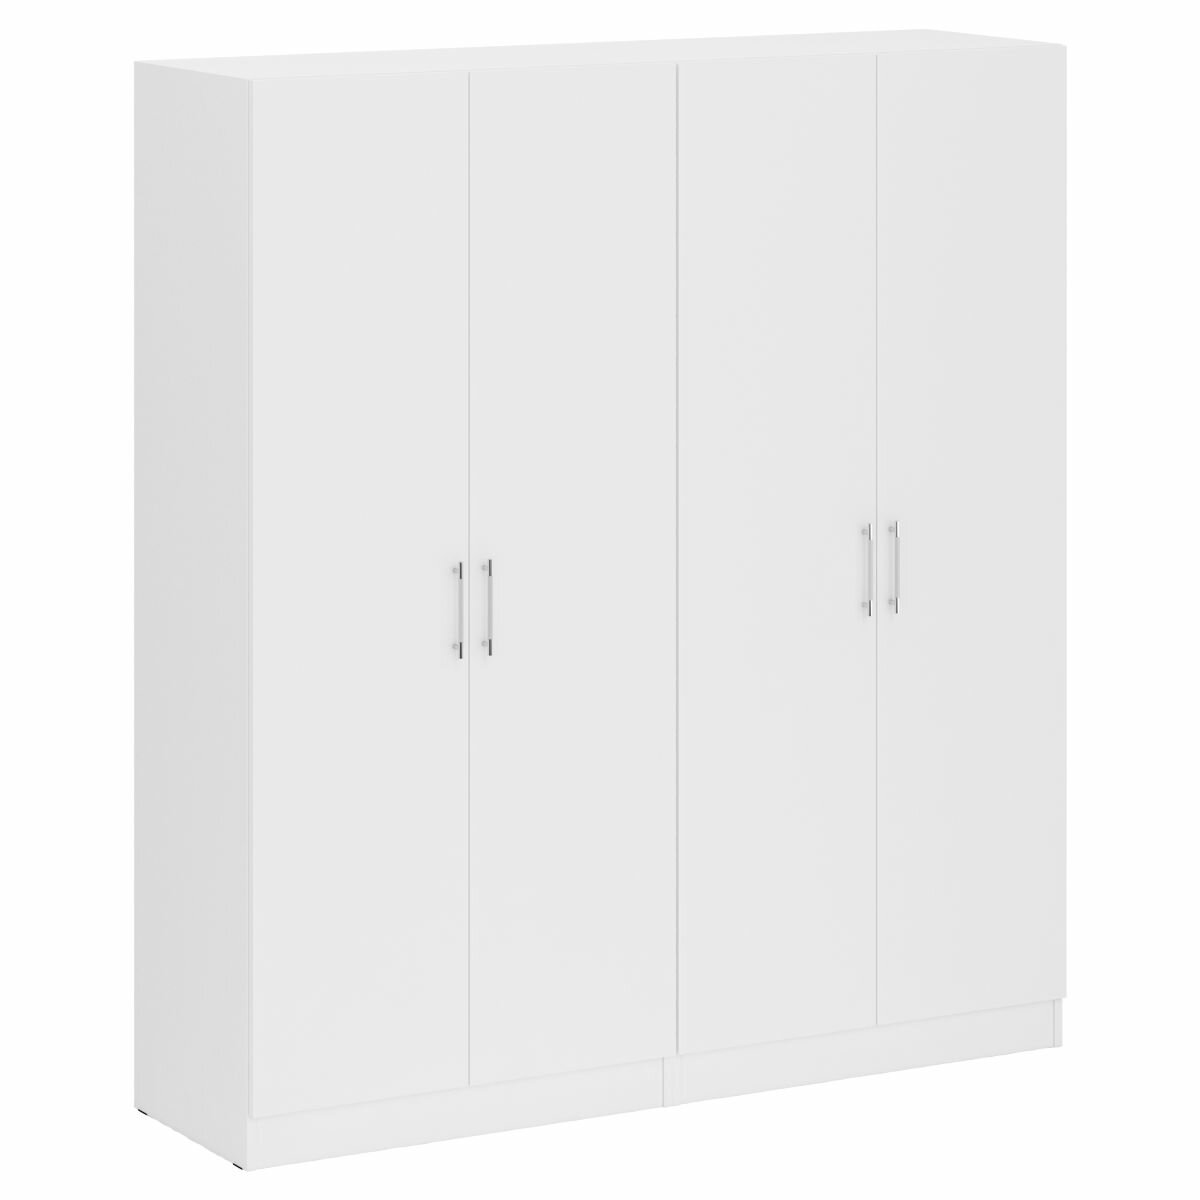 Два 2-х створчатых белых шкафа для одежды цвет белый ШхГхВ 180х52х200 см универсальная сборка